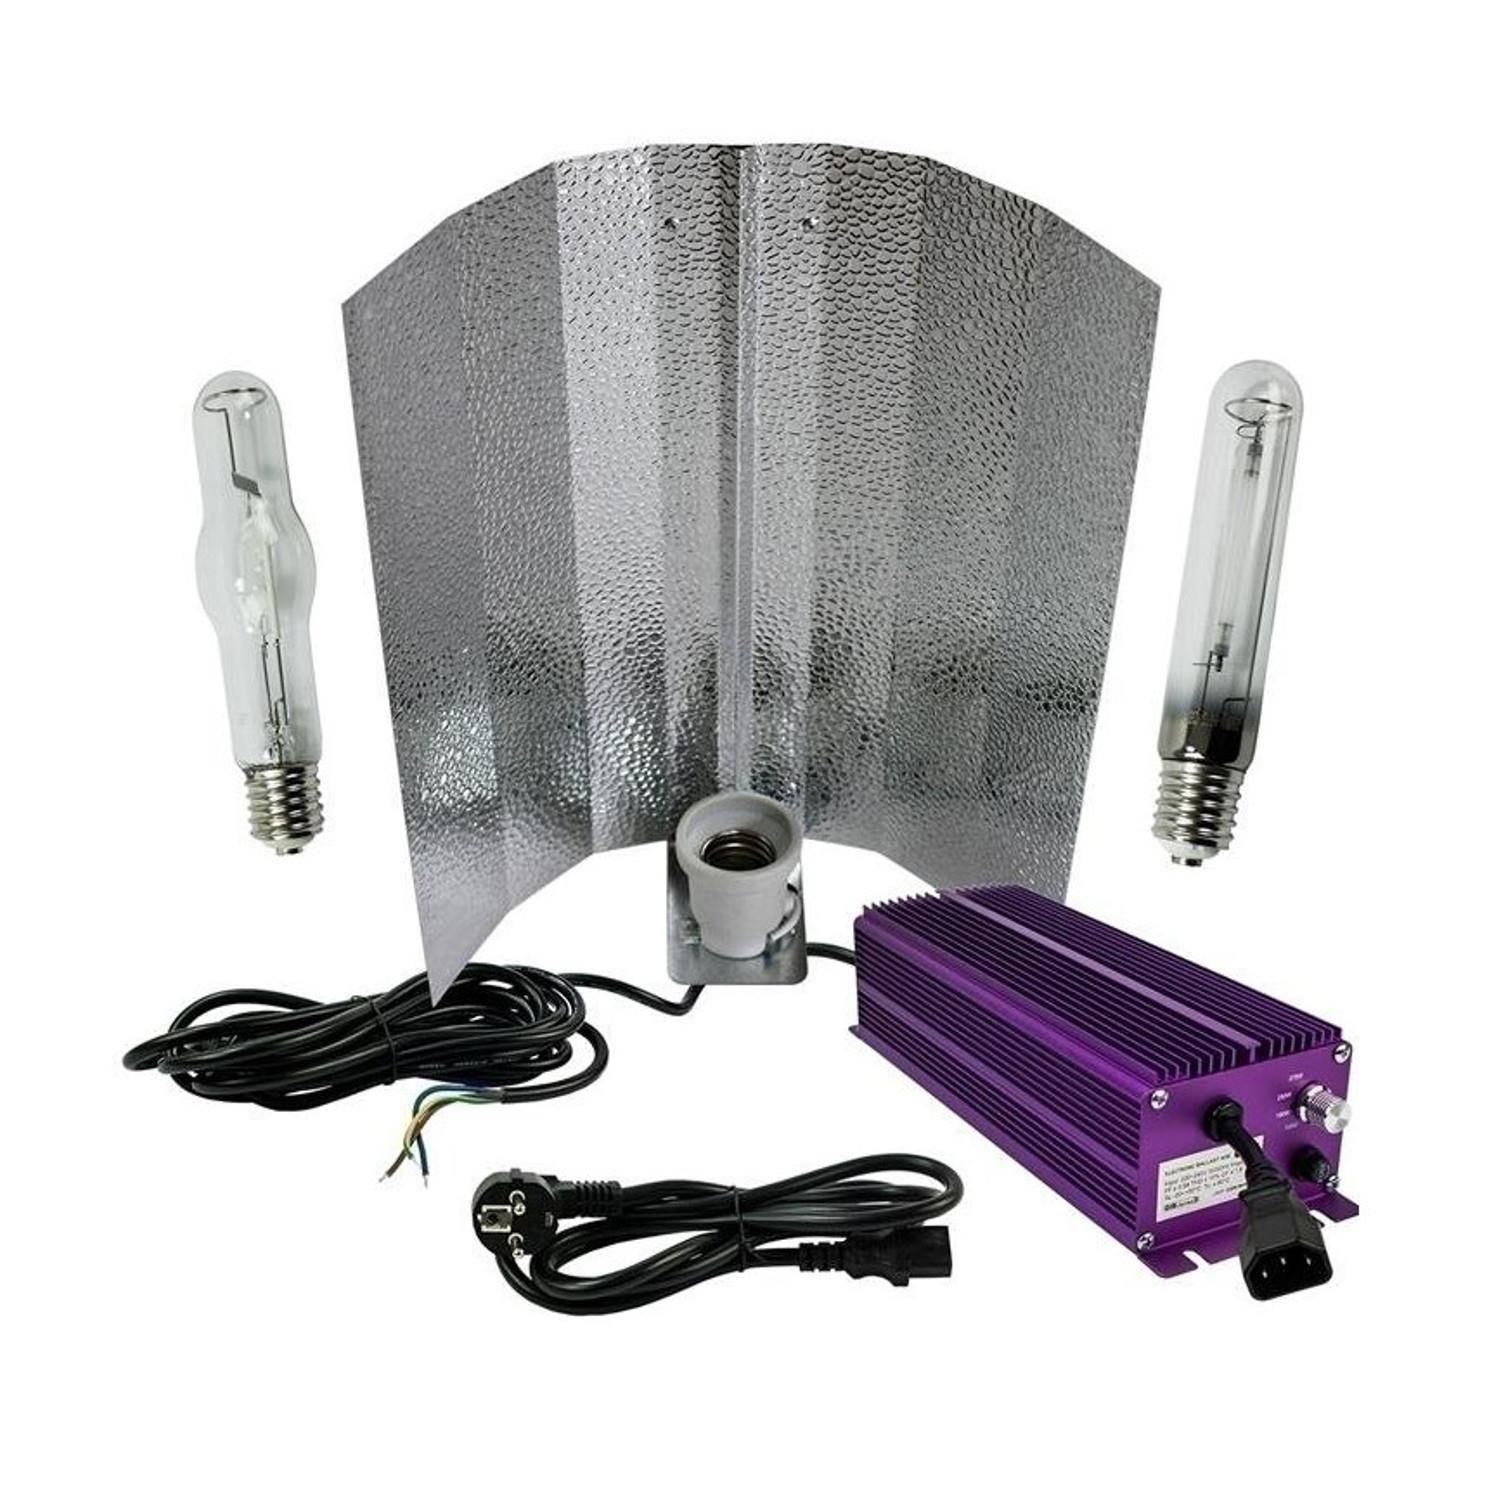 Lumatek Bausatz 250W Wuchs und Blüte- schaltbar unter Beleuchtung > Natriumdampflampen > Lampensets